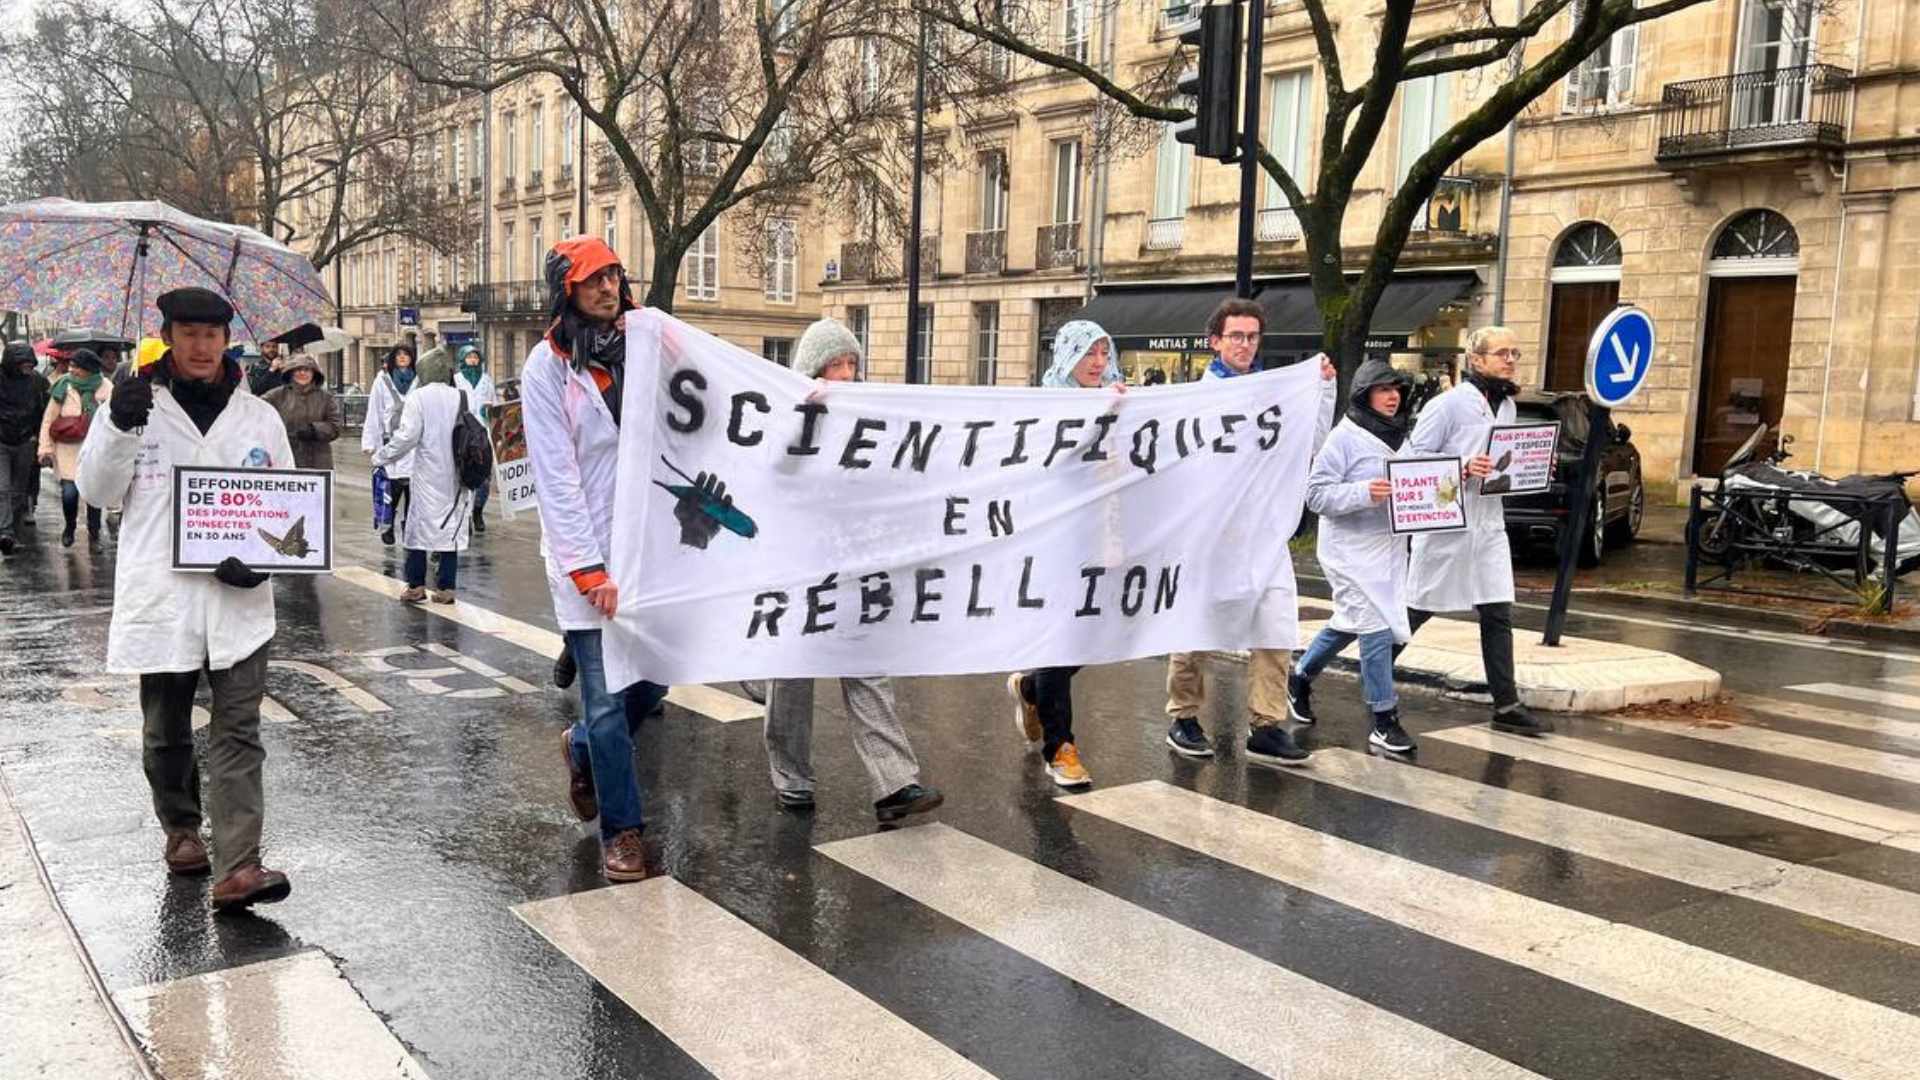 Du 30 novembre au 4 décembre, Scientifiques en rébellion organise sa COP alternative à Bordeaux. //PHOTO : Mathis Nicolas